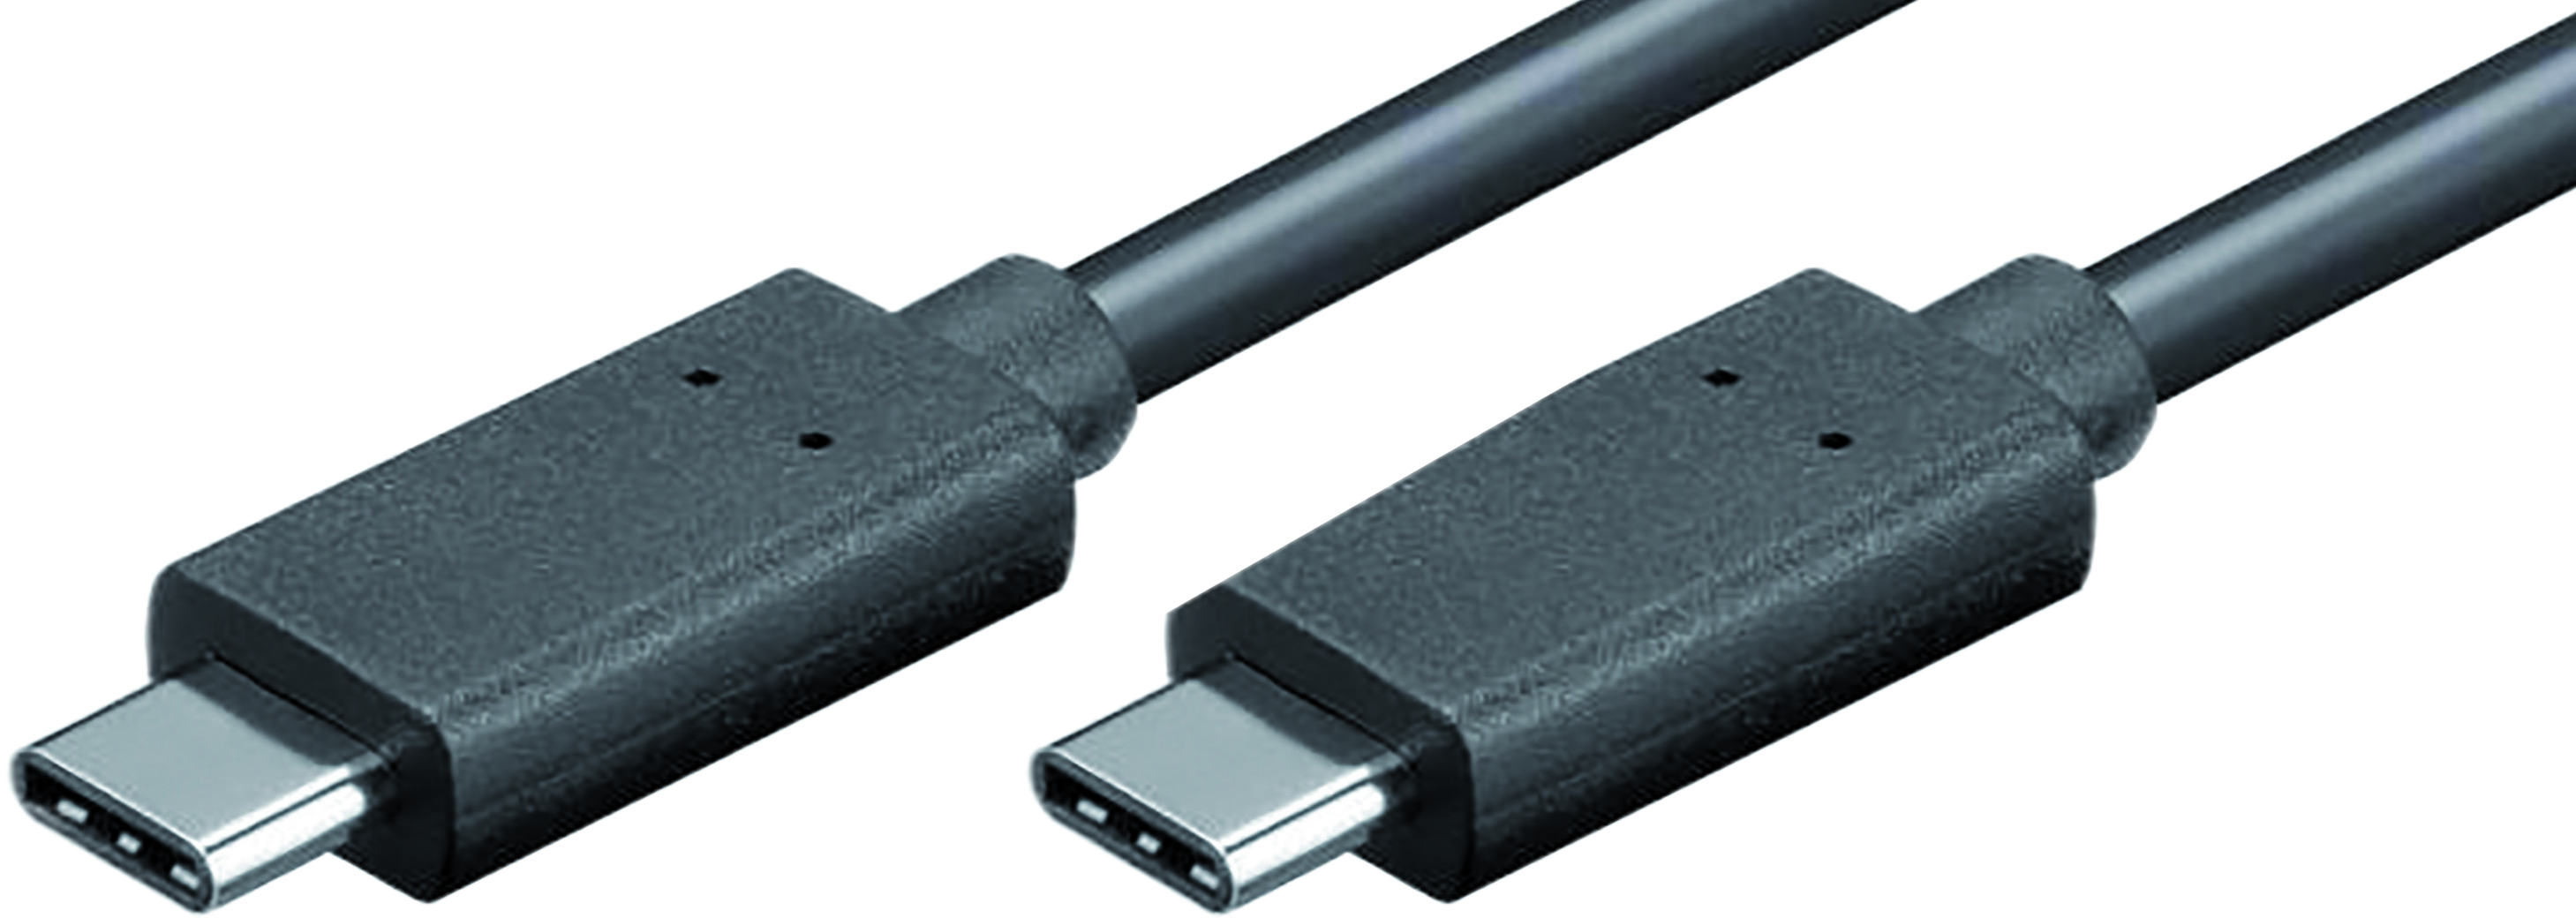 Le Thunderbolt 3 prendra la forme de l'USB-C